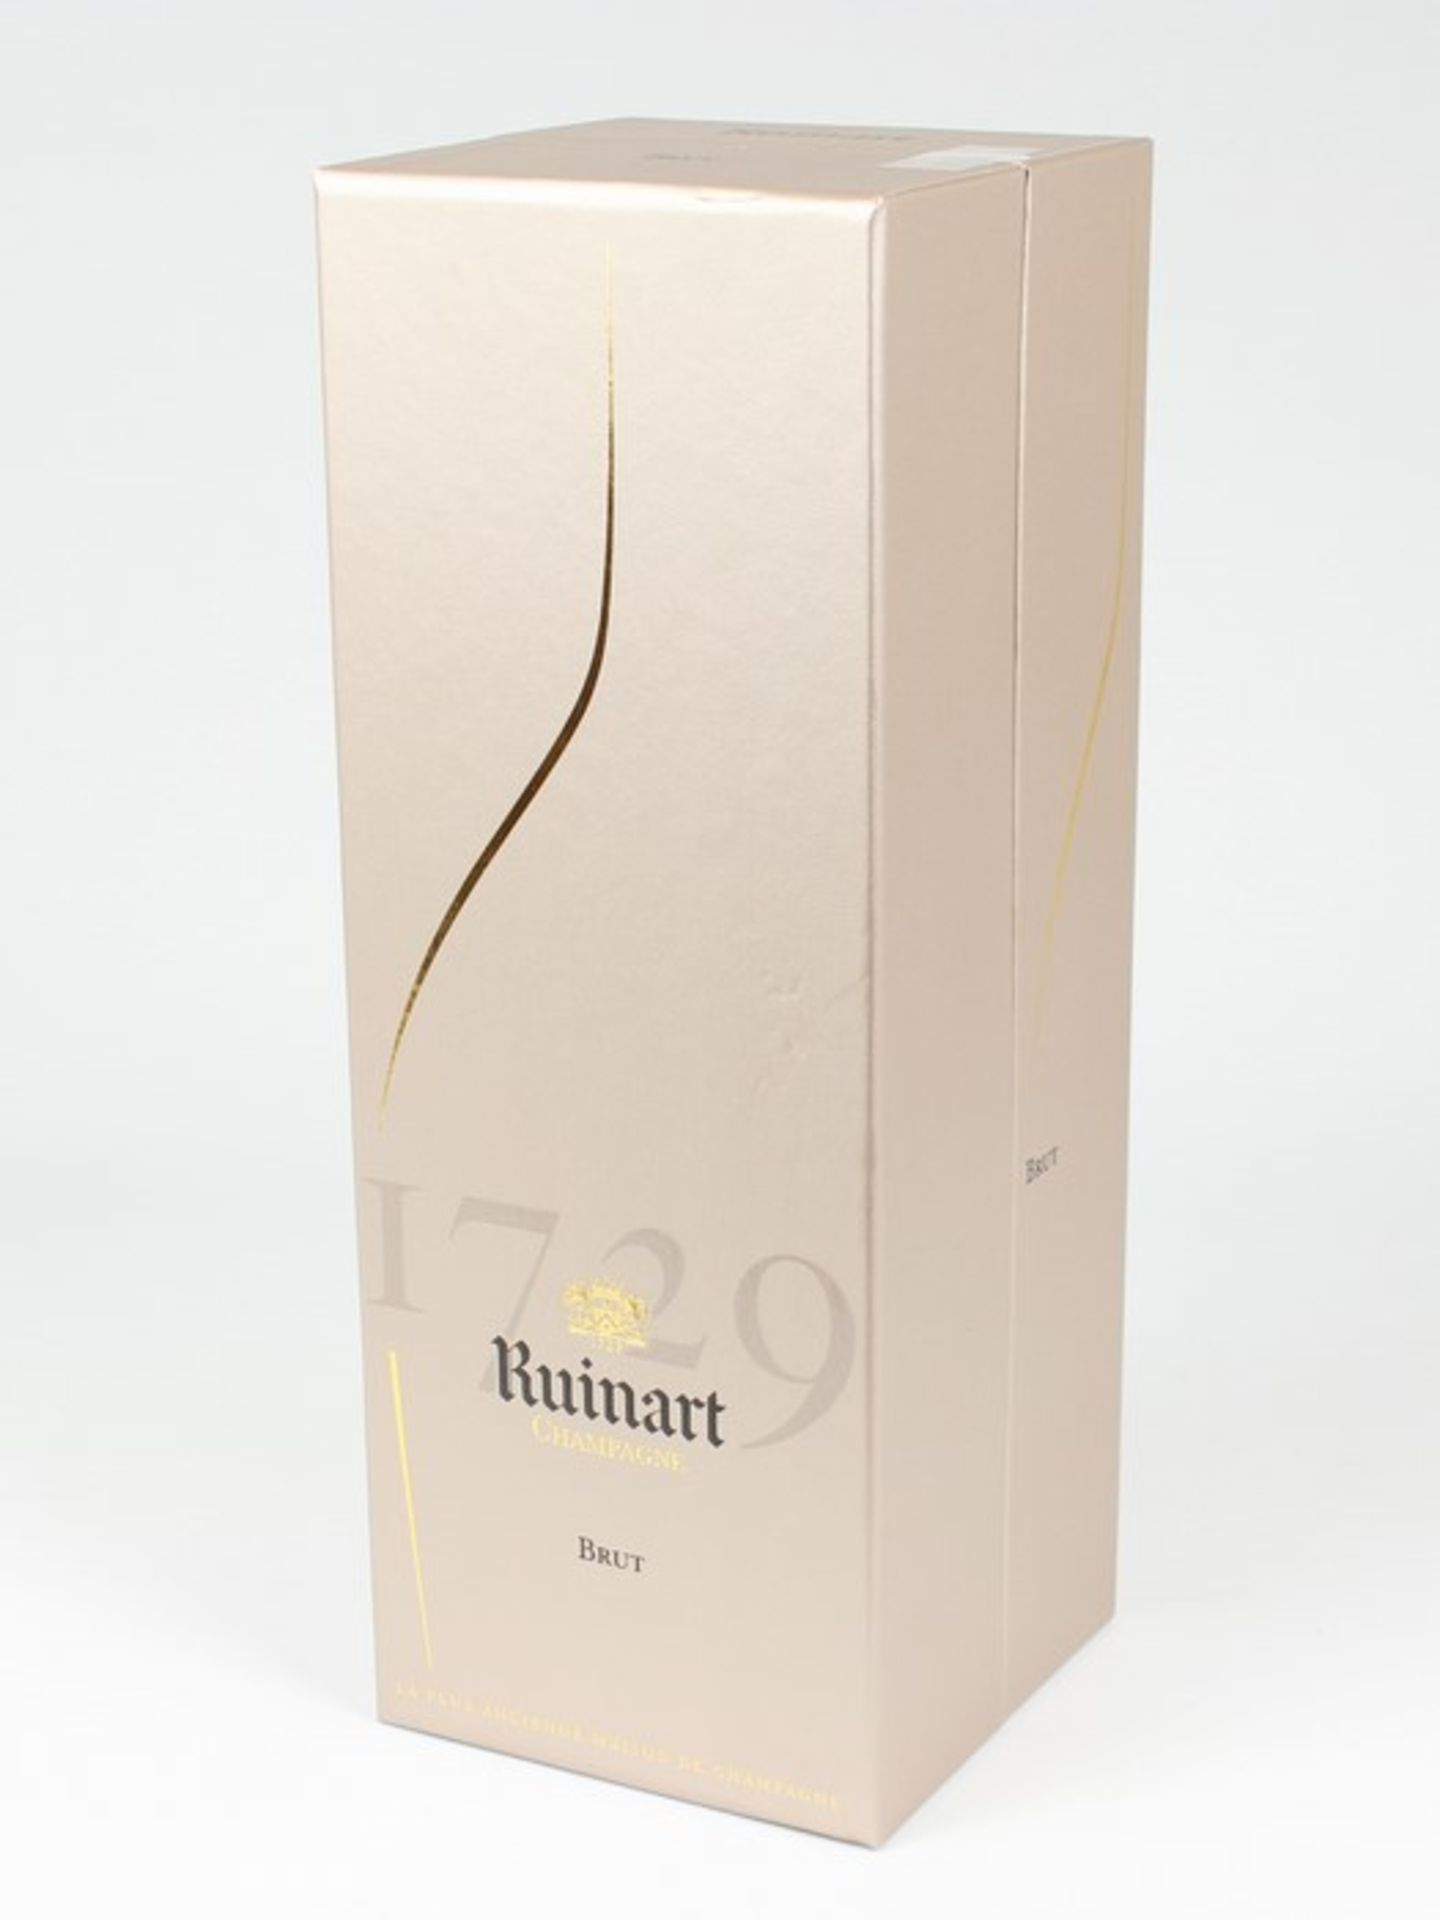 Champagner - RuinartFrankreich, Reims, Brut, 750 ml, 12 % vol., in Originalgeschenkbox - Bild 2 aus 2